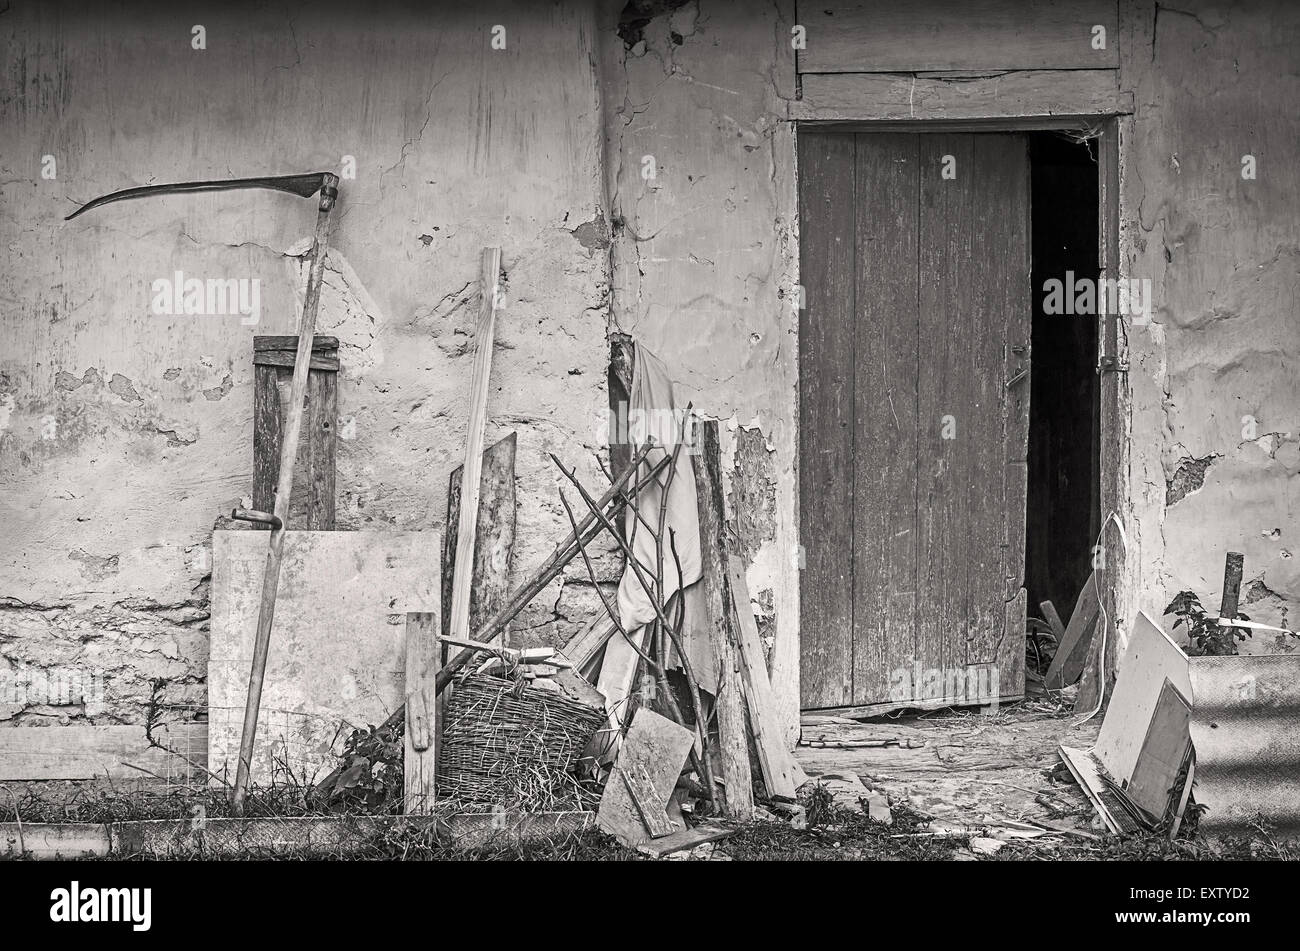 Landwirtschaftliche Geräte in der Nähe von Mauer der alten Schuppen. Schwarz / weiß Foto. Stockfoto